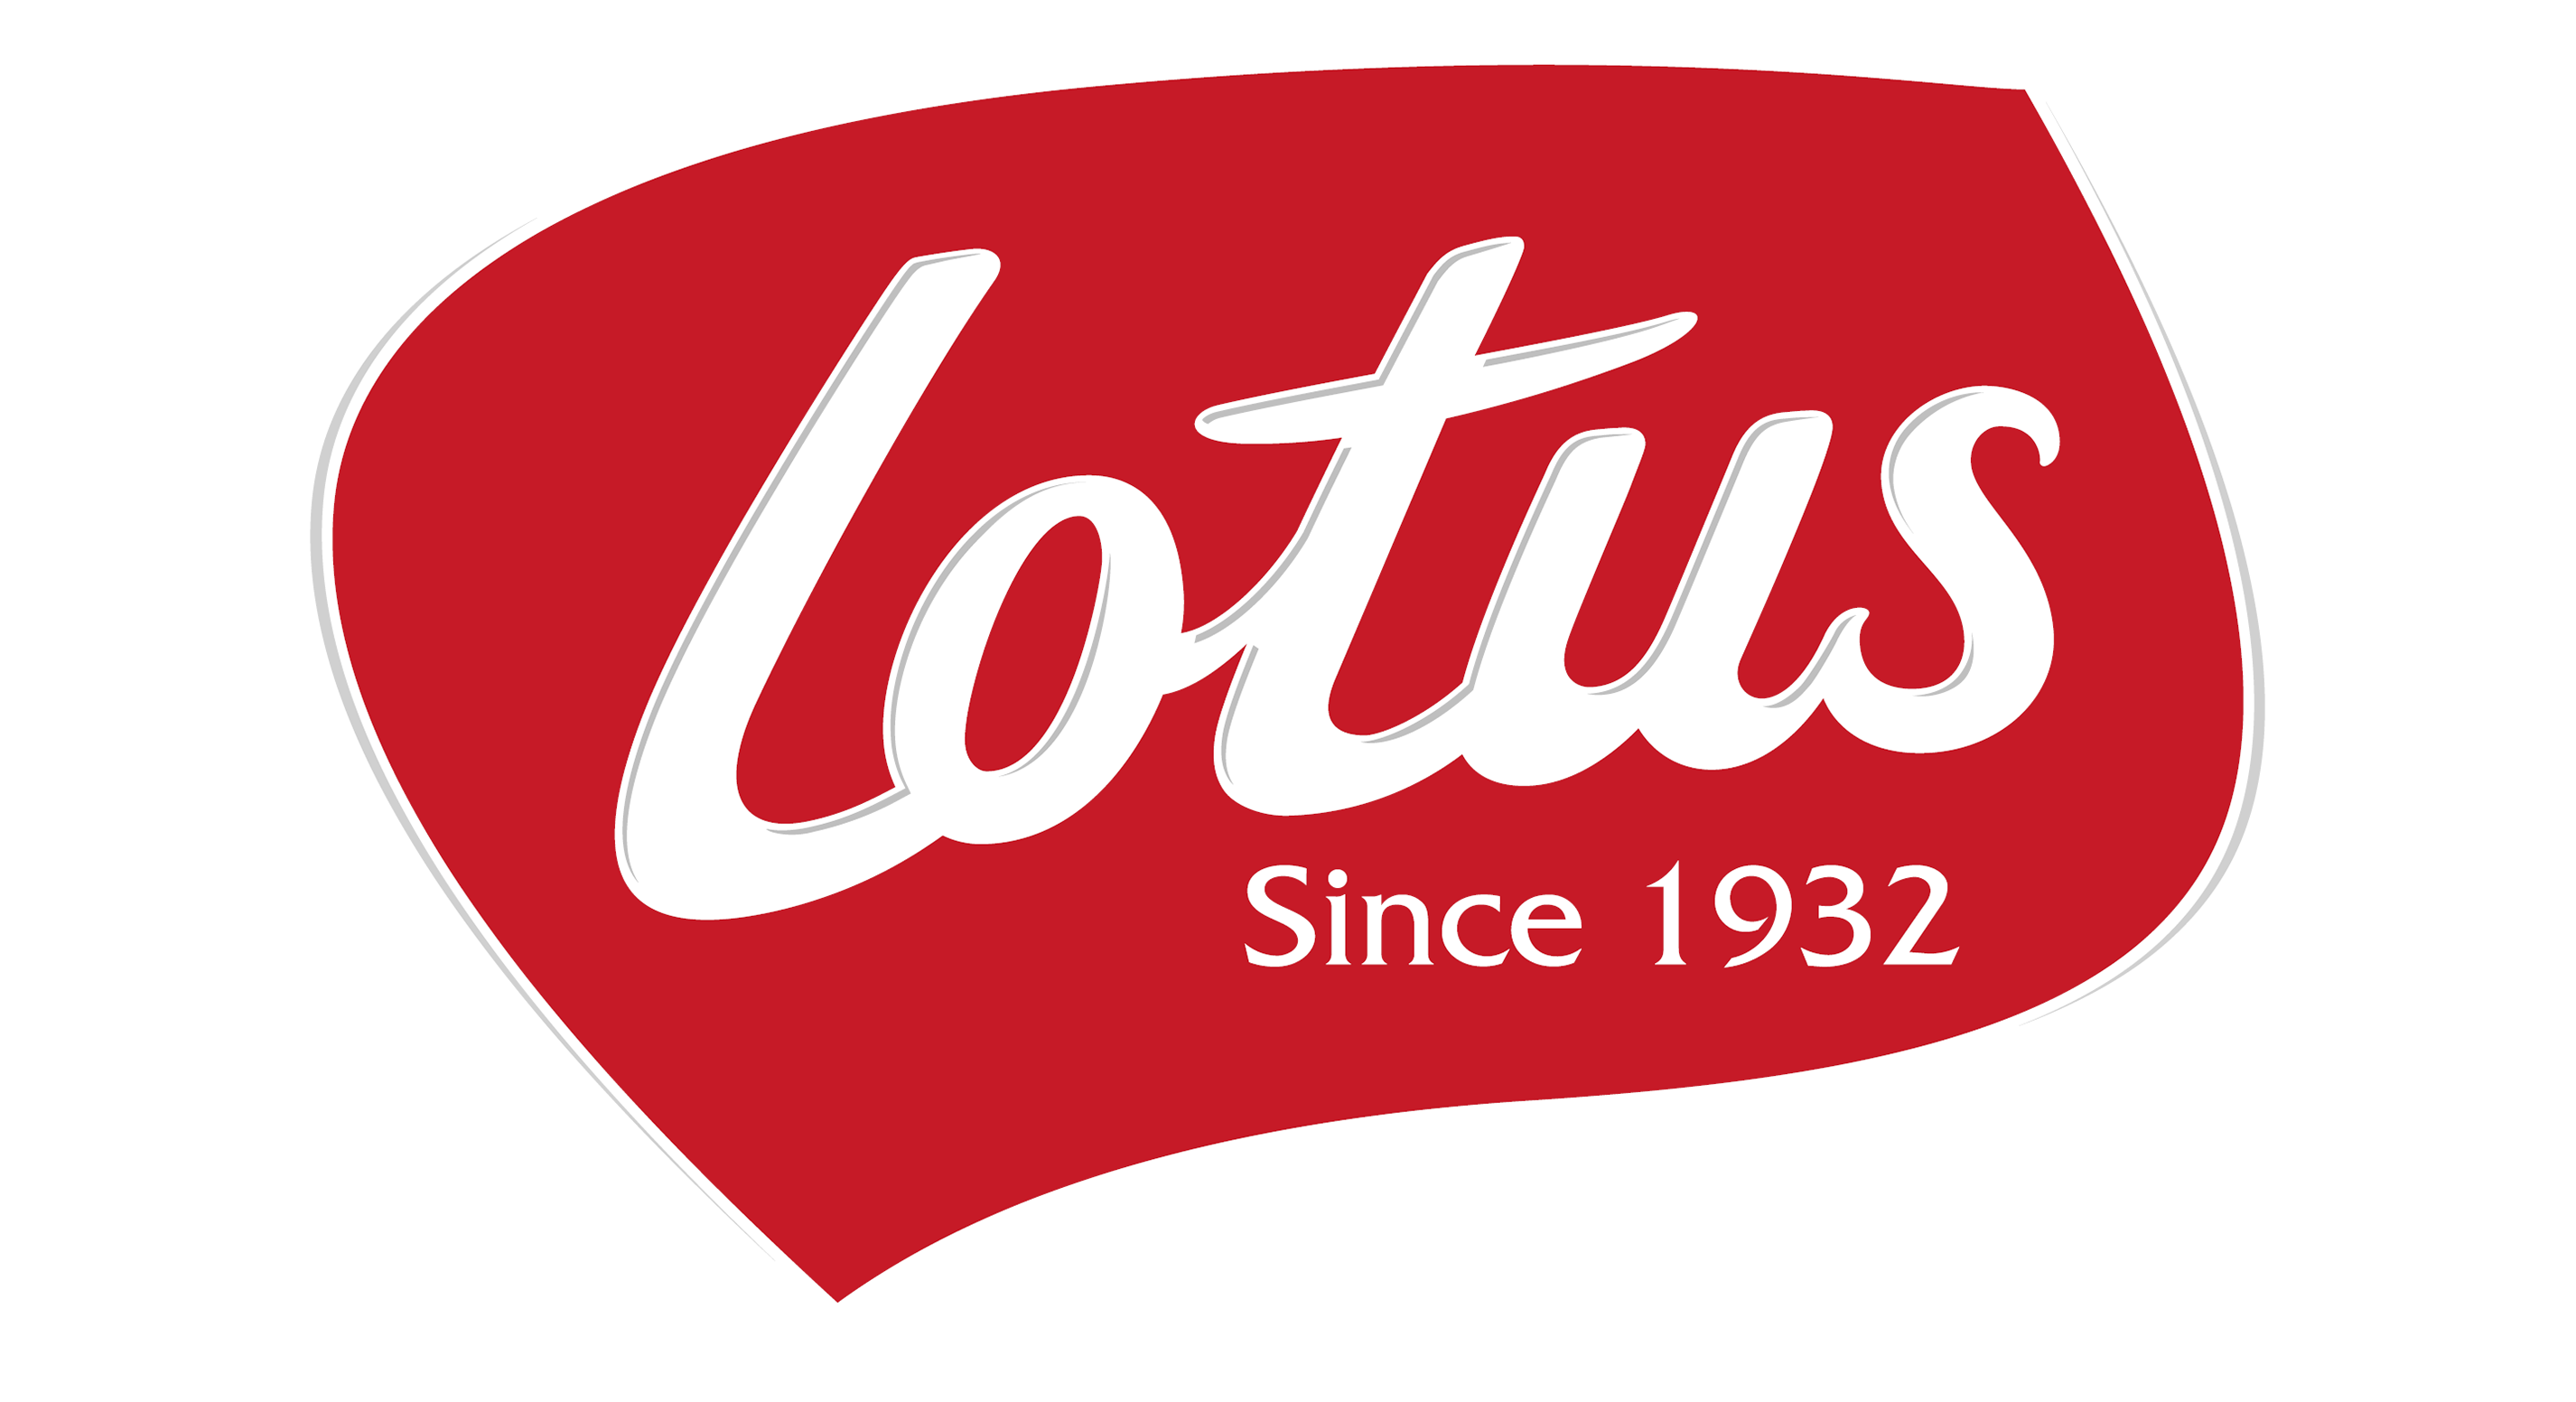 Lotus Bakeries logo